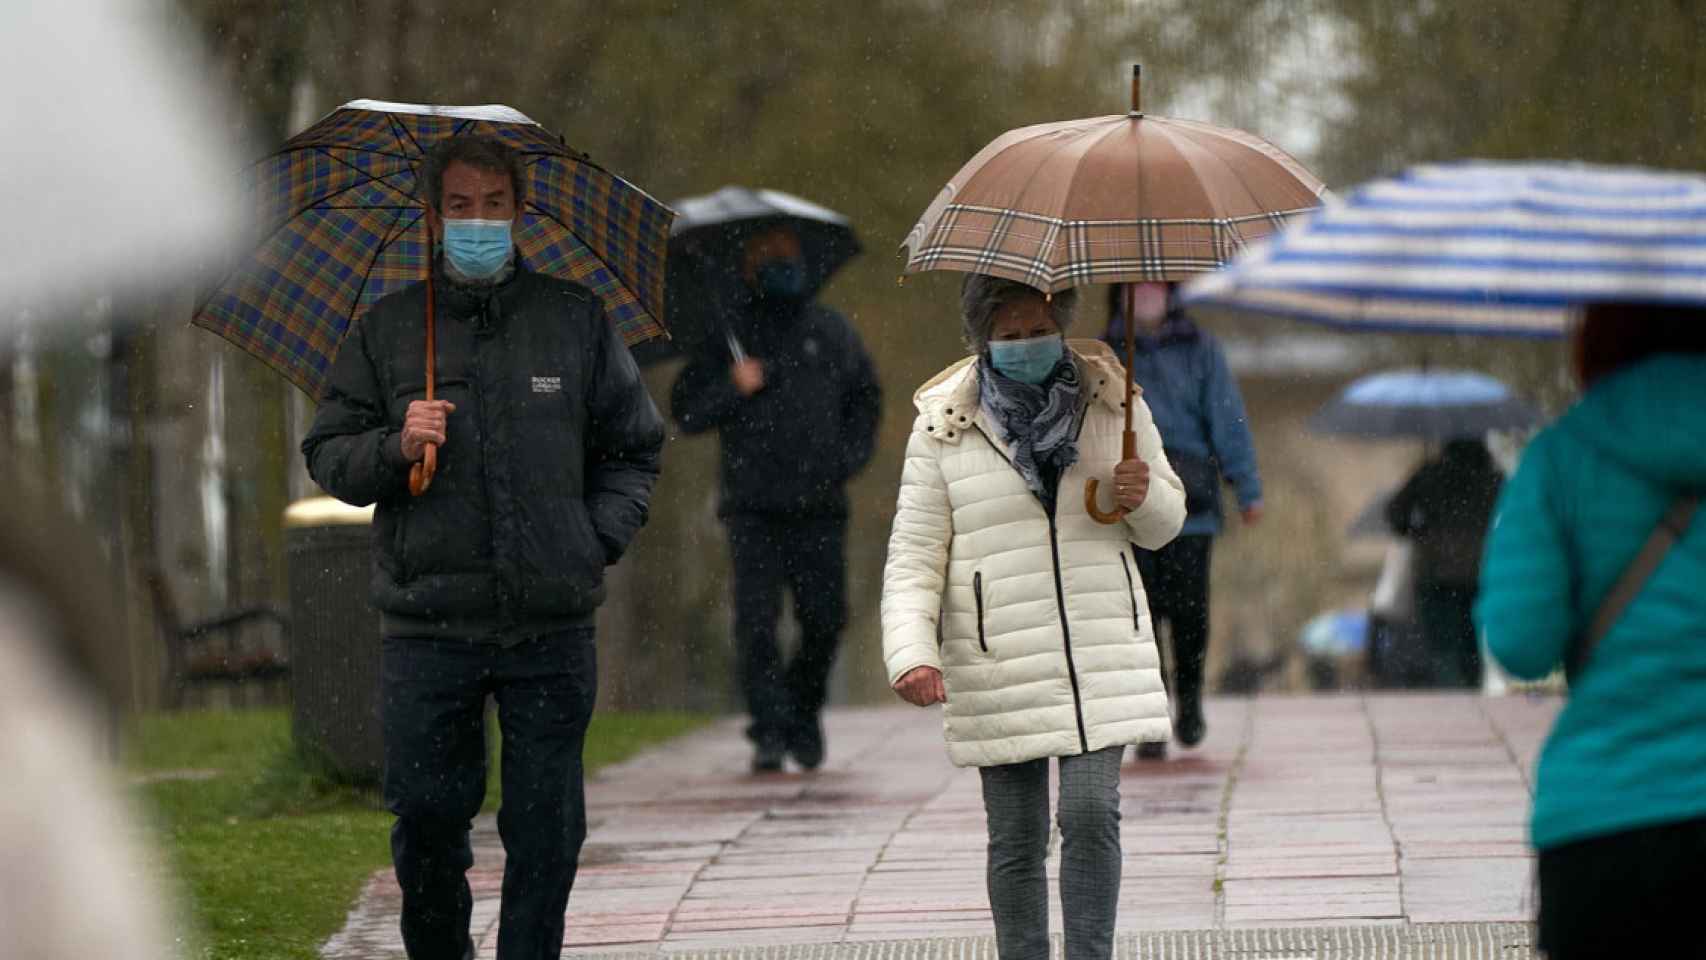 Imagen de archivo de varias personas refugiándose de las lluvias con un paraguas